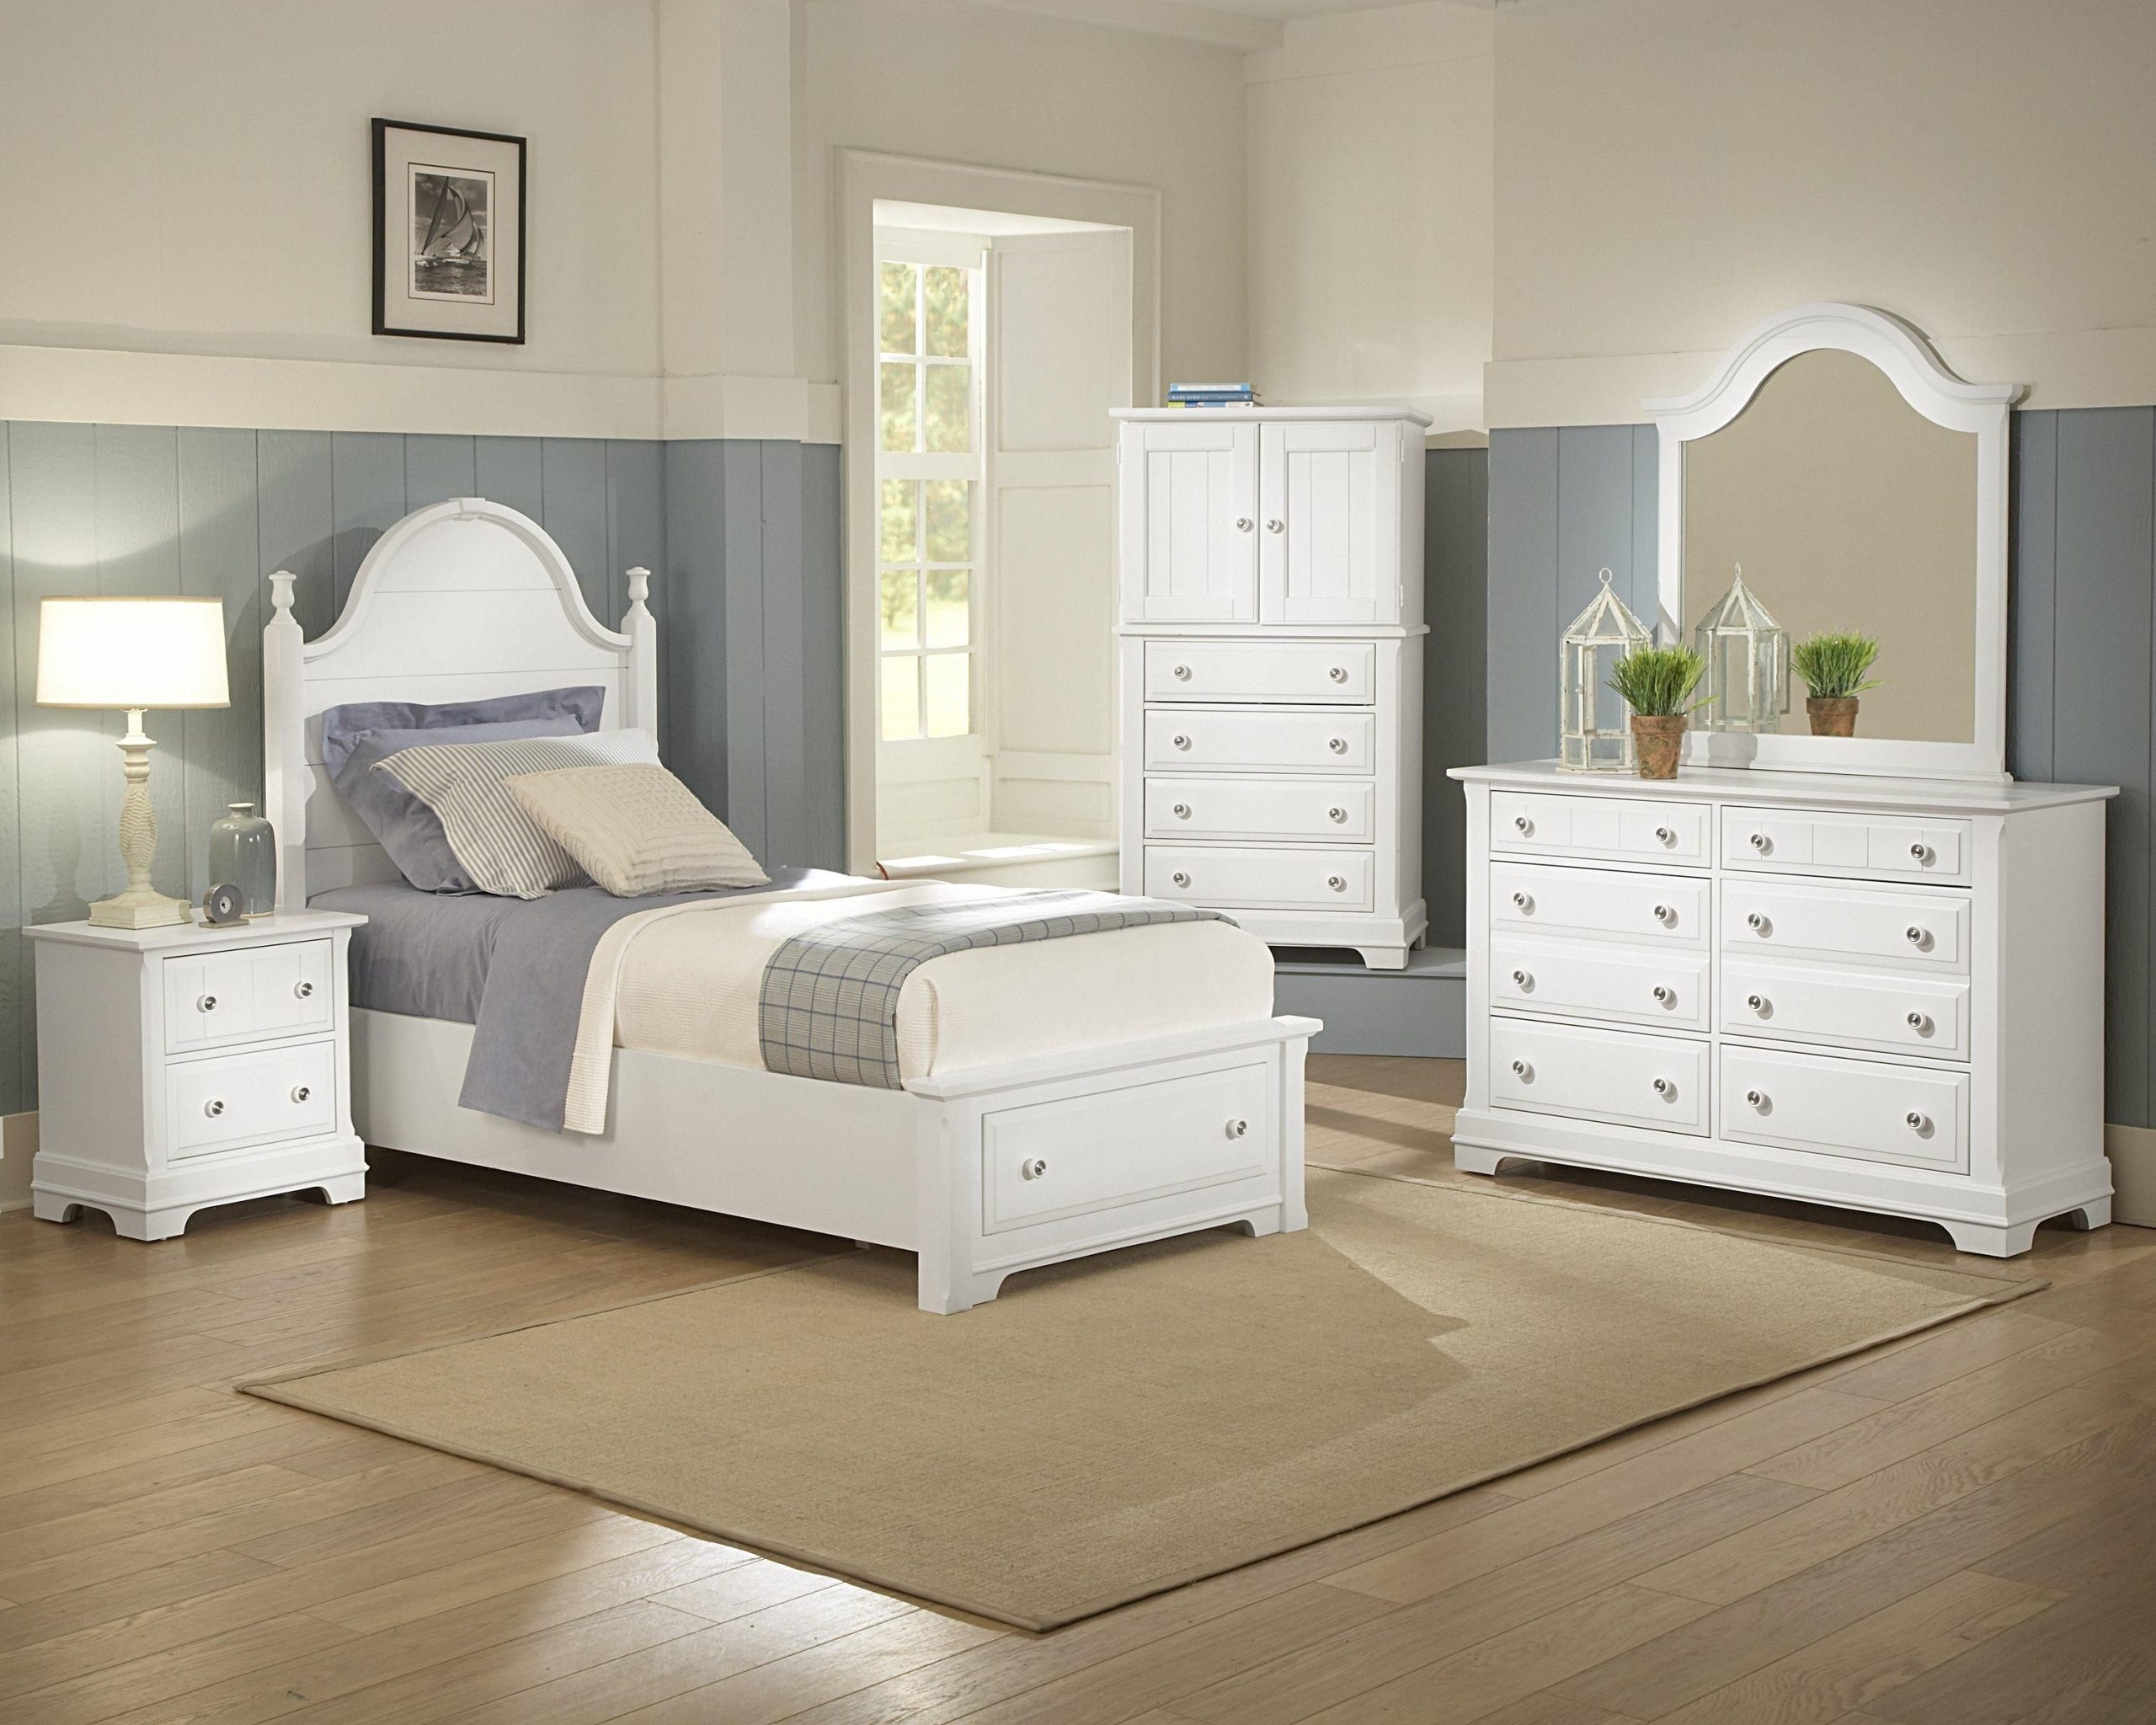 bassett bedroom furniture hardware